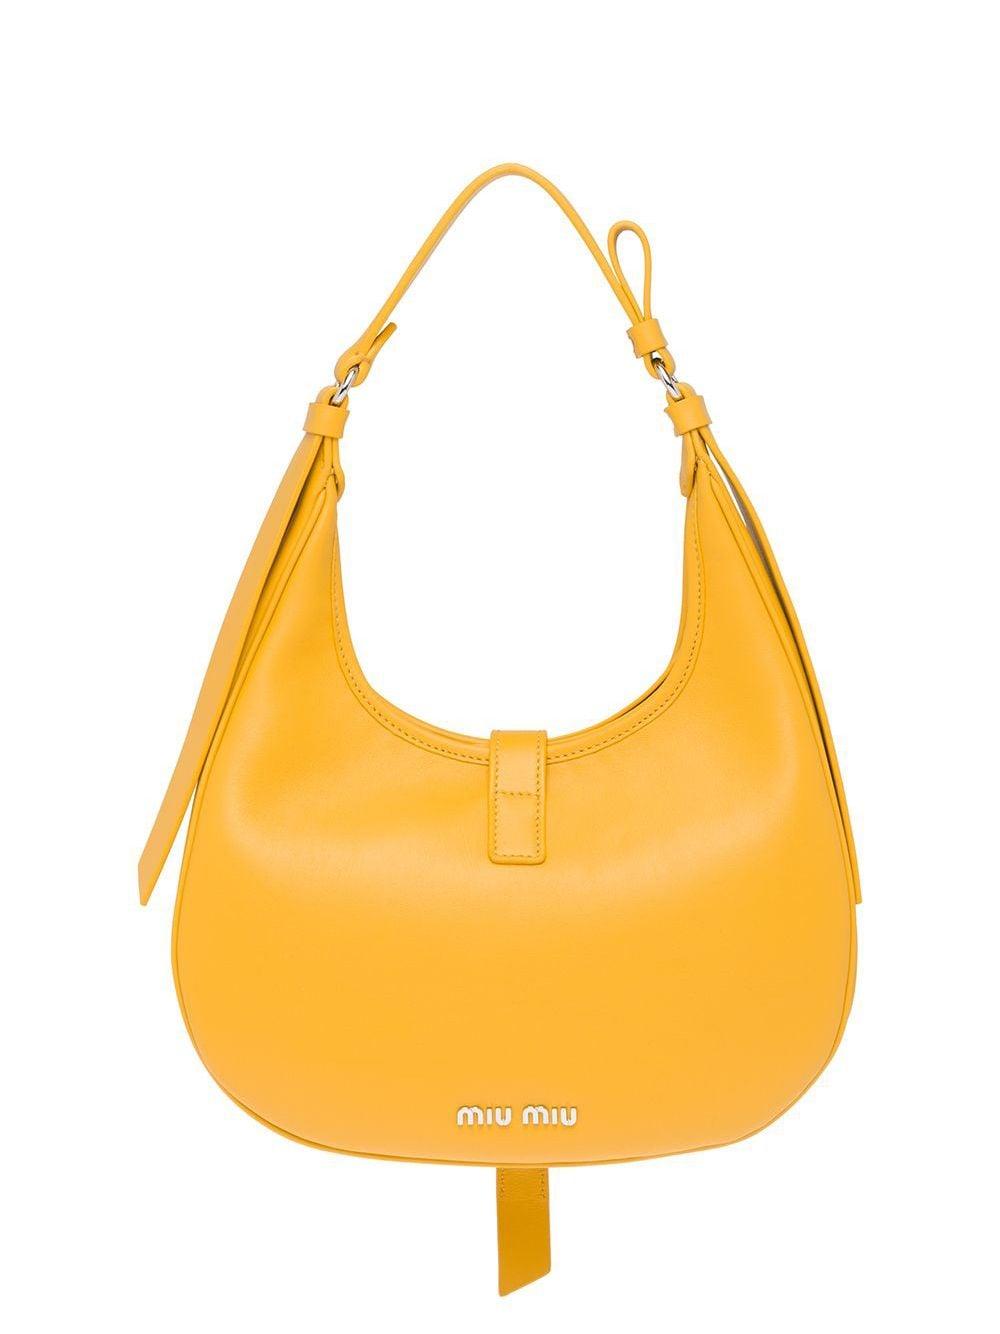 Miu Miu Leather Hobo Bag in Yellow - Save 29% - Lyst